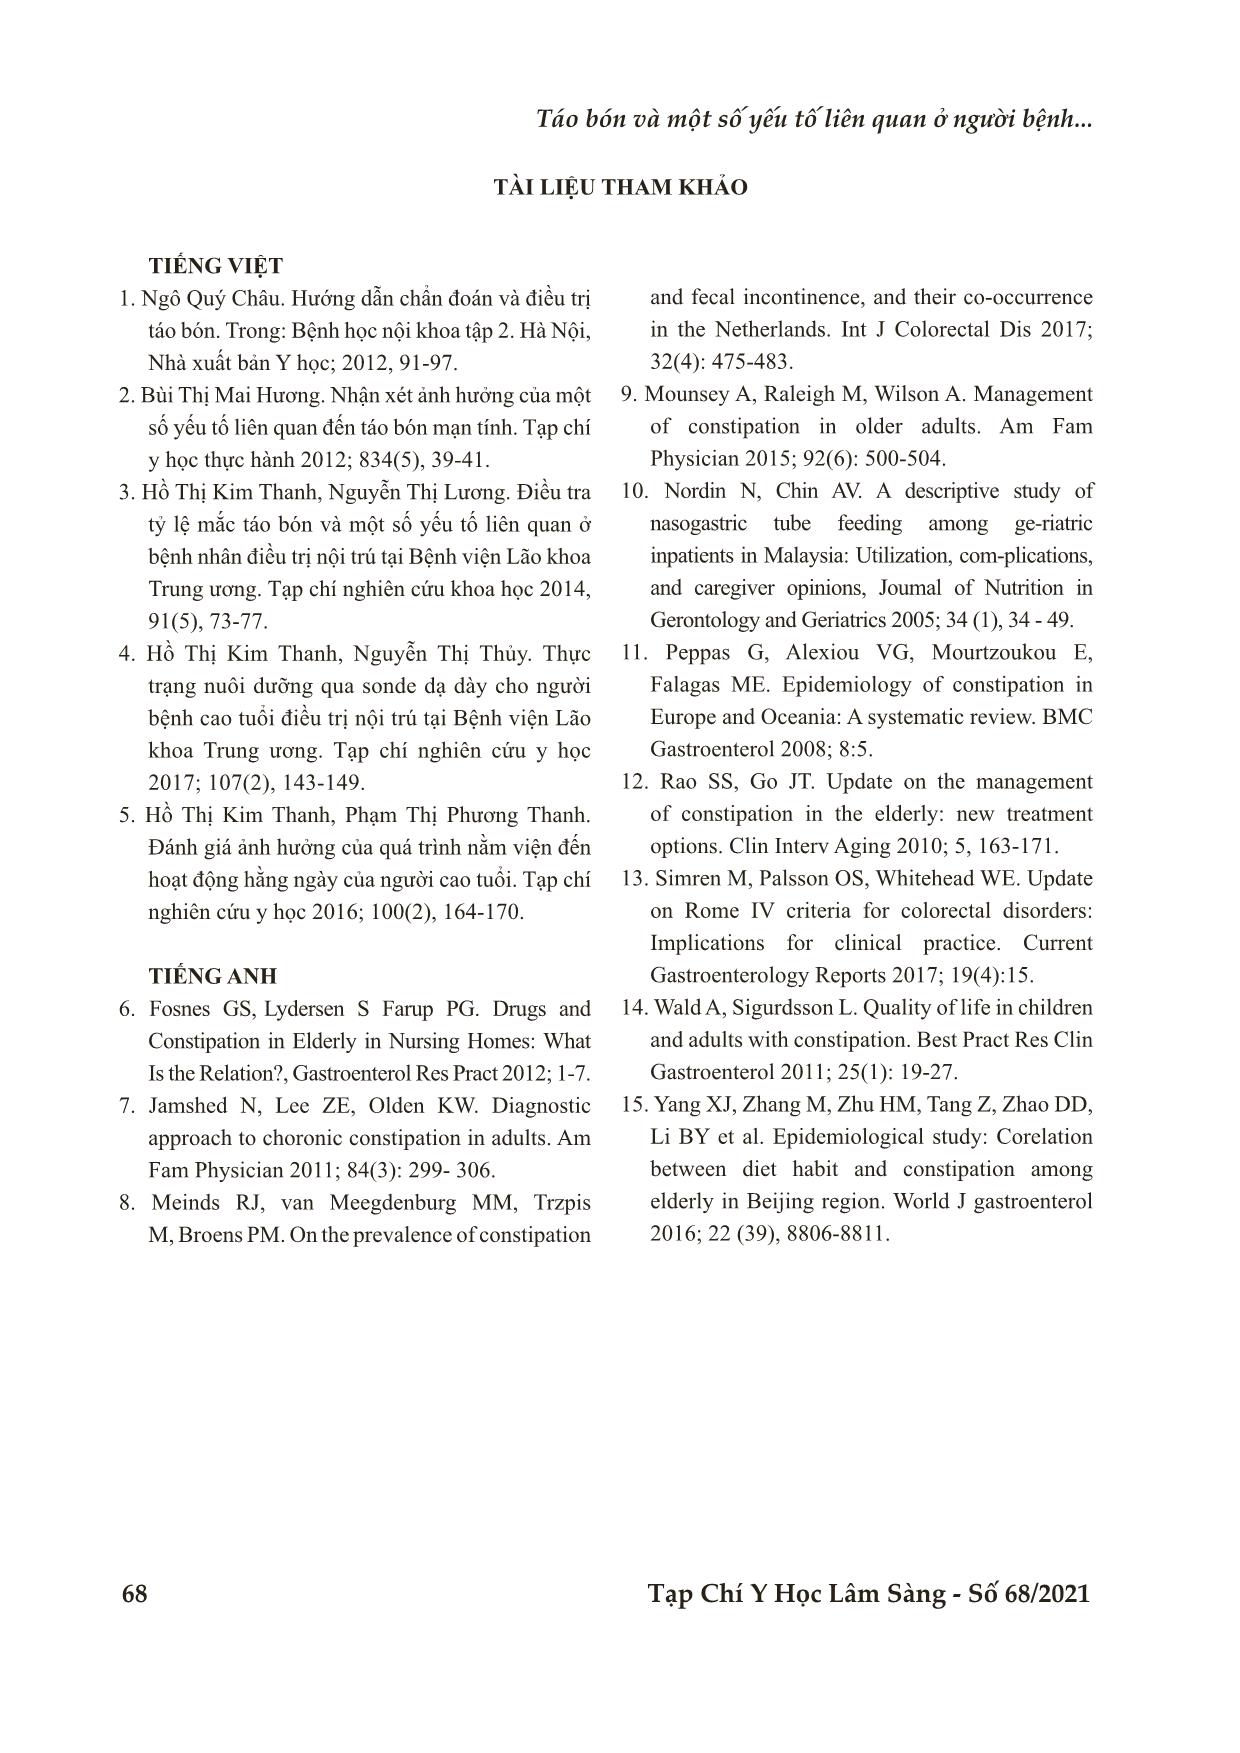 Táo bón và một số yếu tố liên quan ở người bệnh tại khoa nội lão - Bệnh viện C Đà Nẵng trang 7